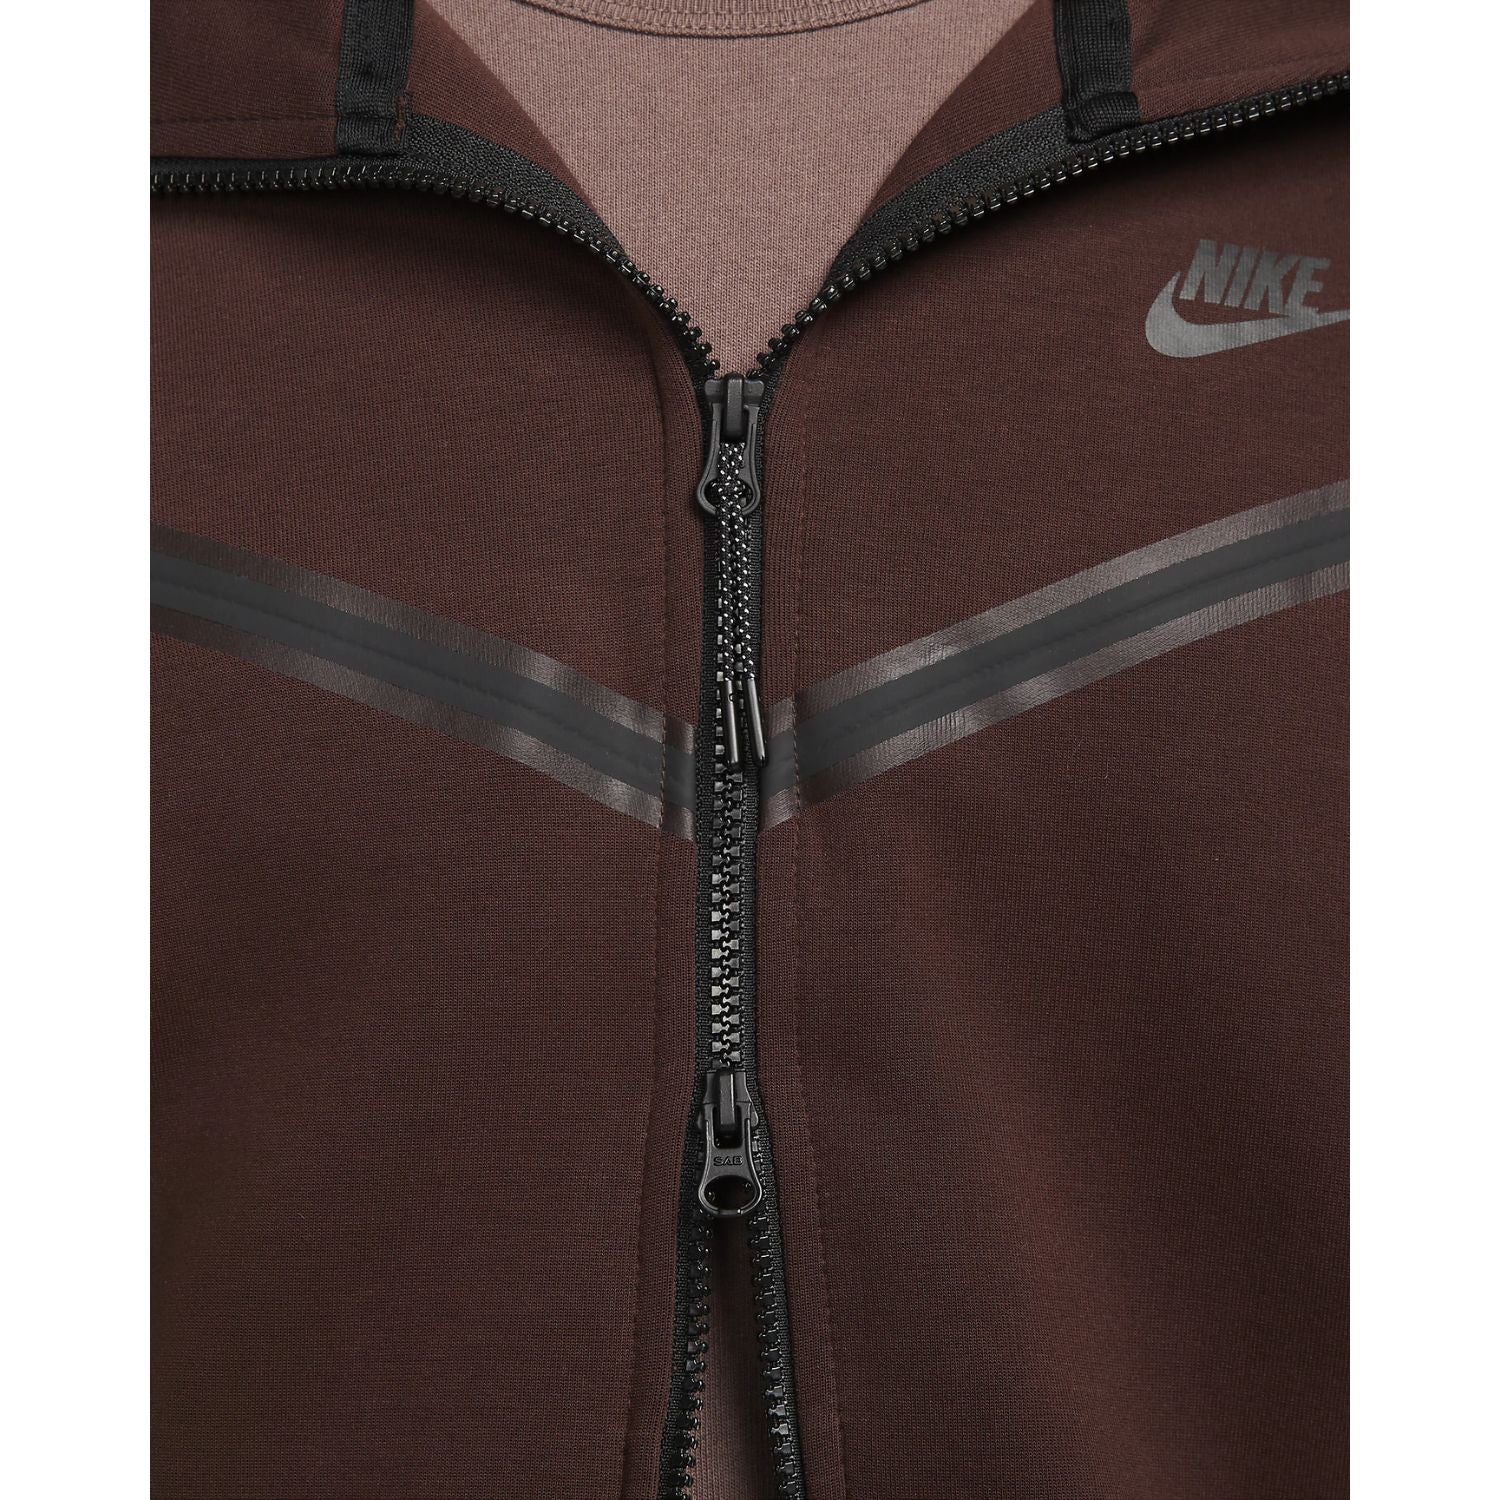 Nike Sportswear Tech Fleece Full-Zip Hoodie Earth/Black